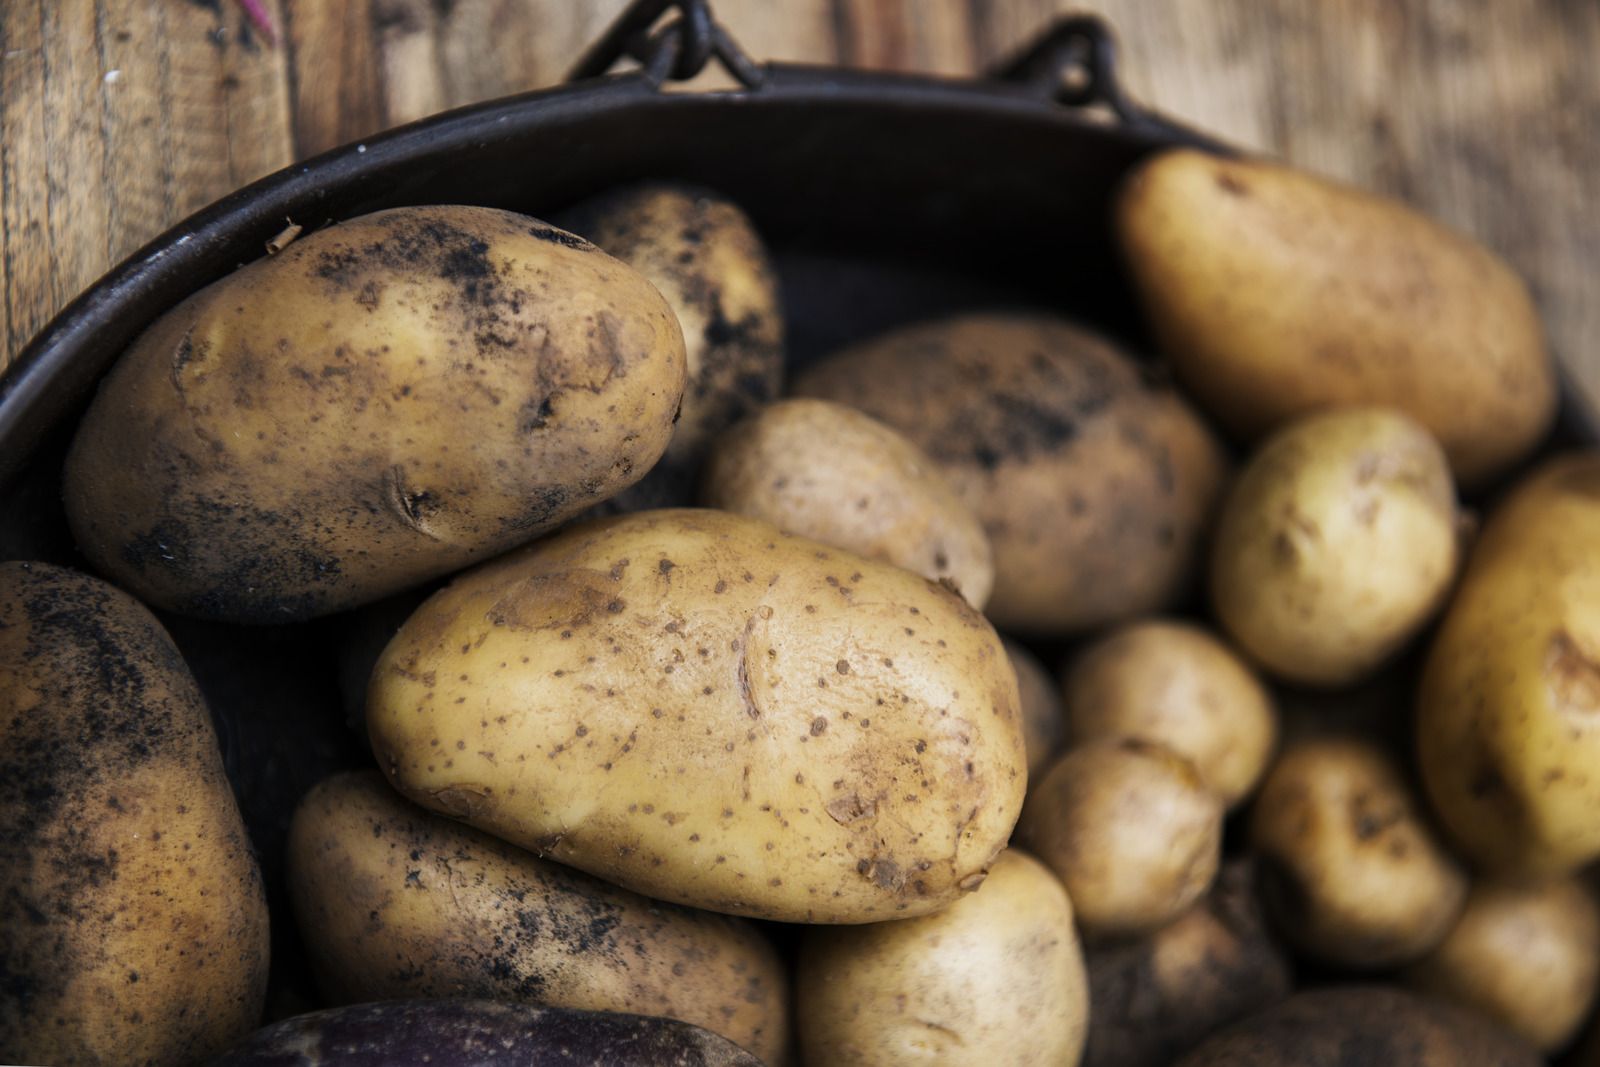 Objavte konzumné zemiaky od miestnych farmárov podľa účelu použitia.